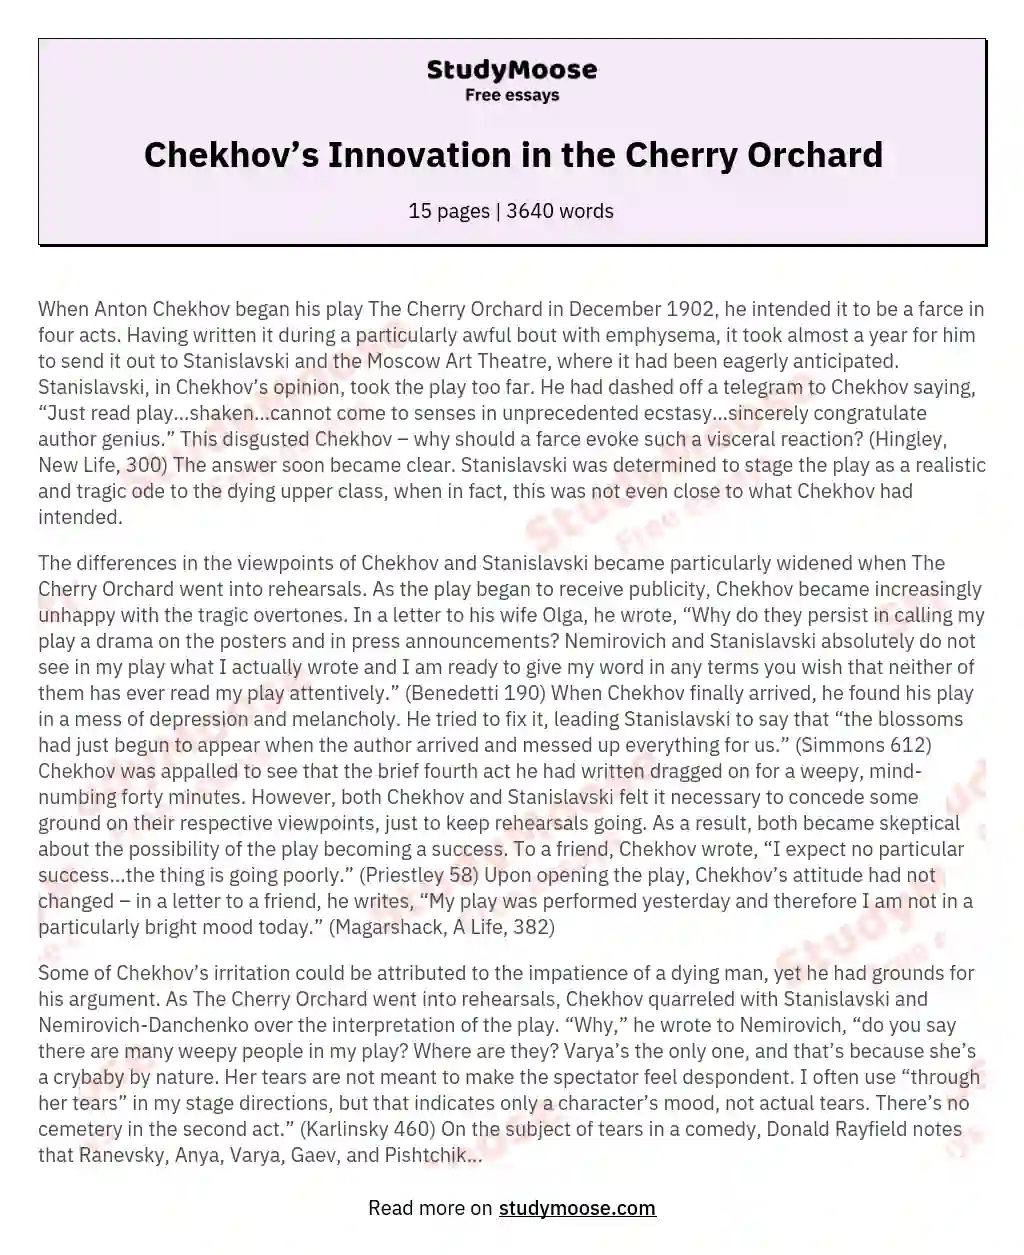 Chekhov’s Innovation in the Cherry Orchard essay